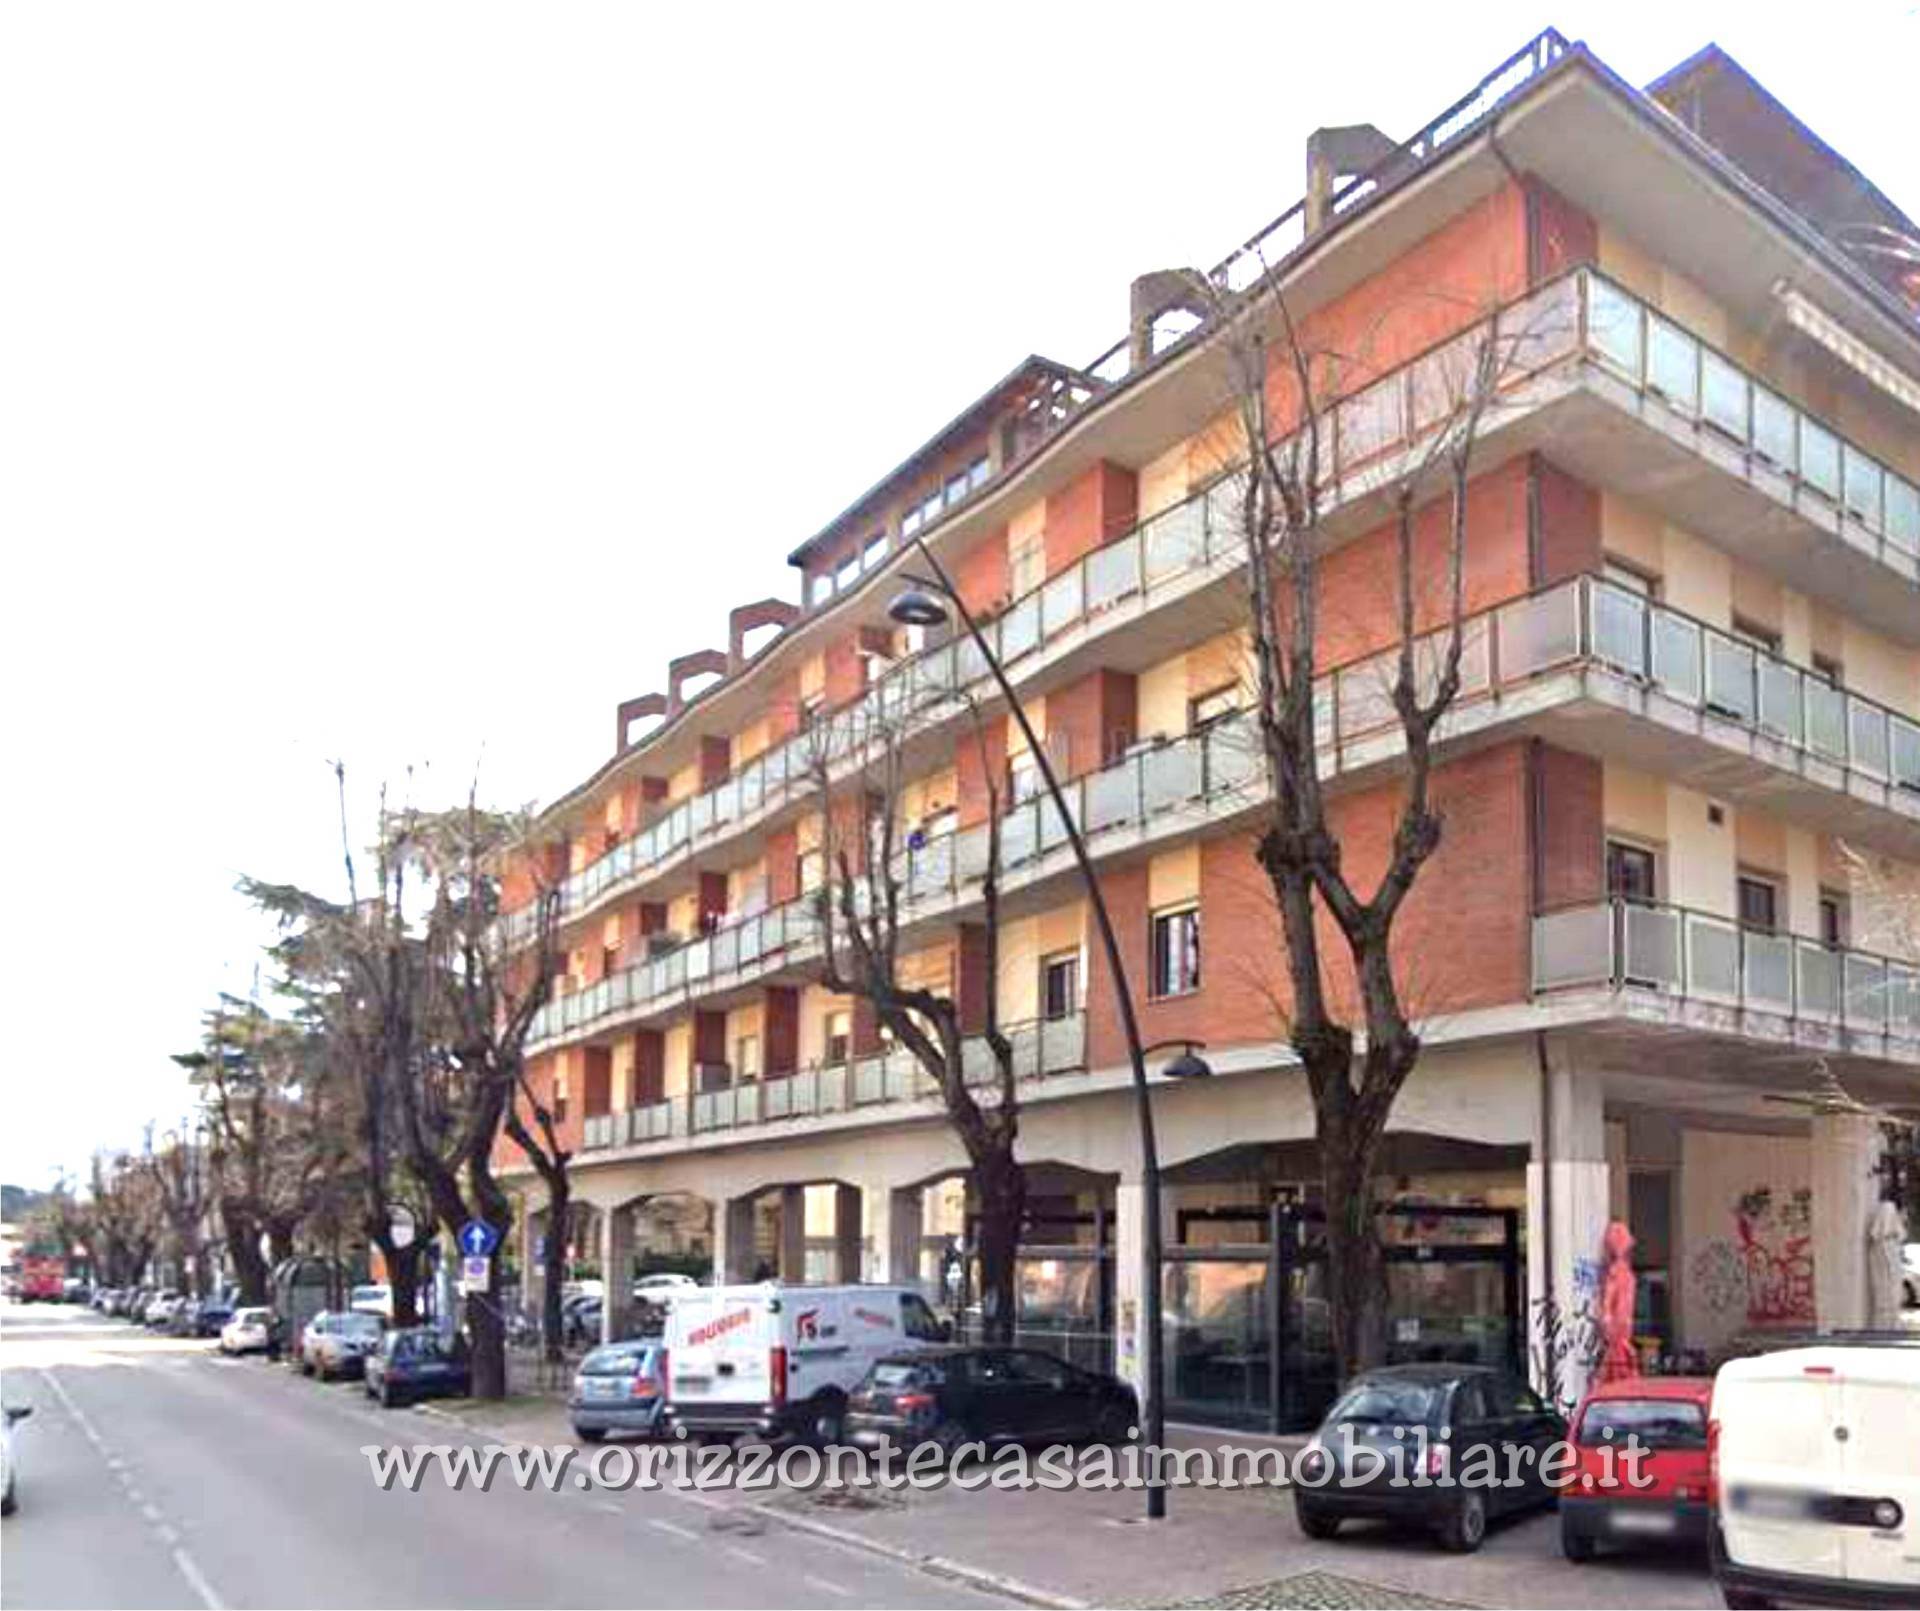 Appartamento in vendita a Ascoli Piceno, 4 locali, zona Località: PortaMaggiore, prezzo € 120.000 | PortaleAgenzieImmobiliari.it